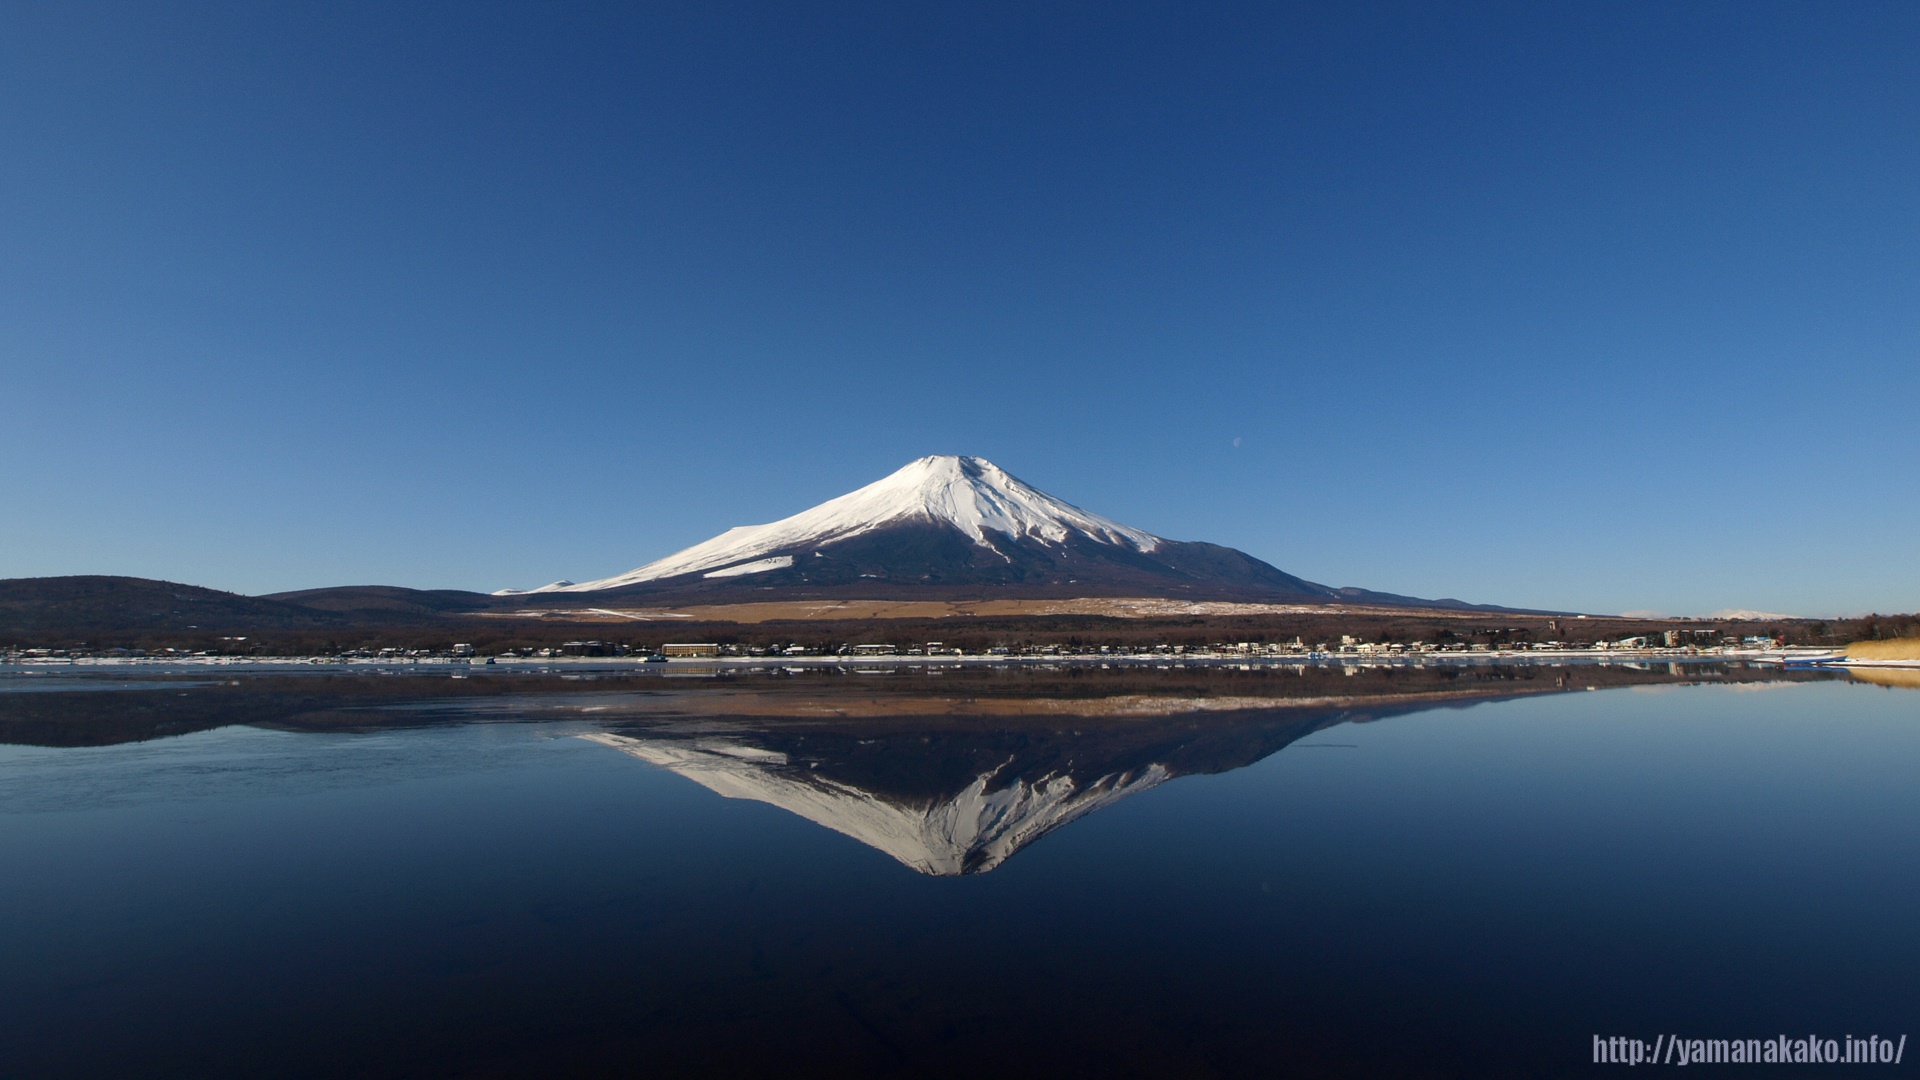 09年の富士山 壁紙用 山中湖観光情報